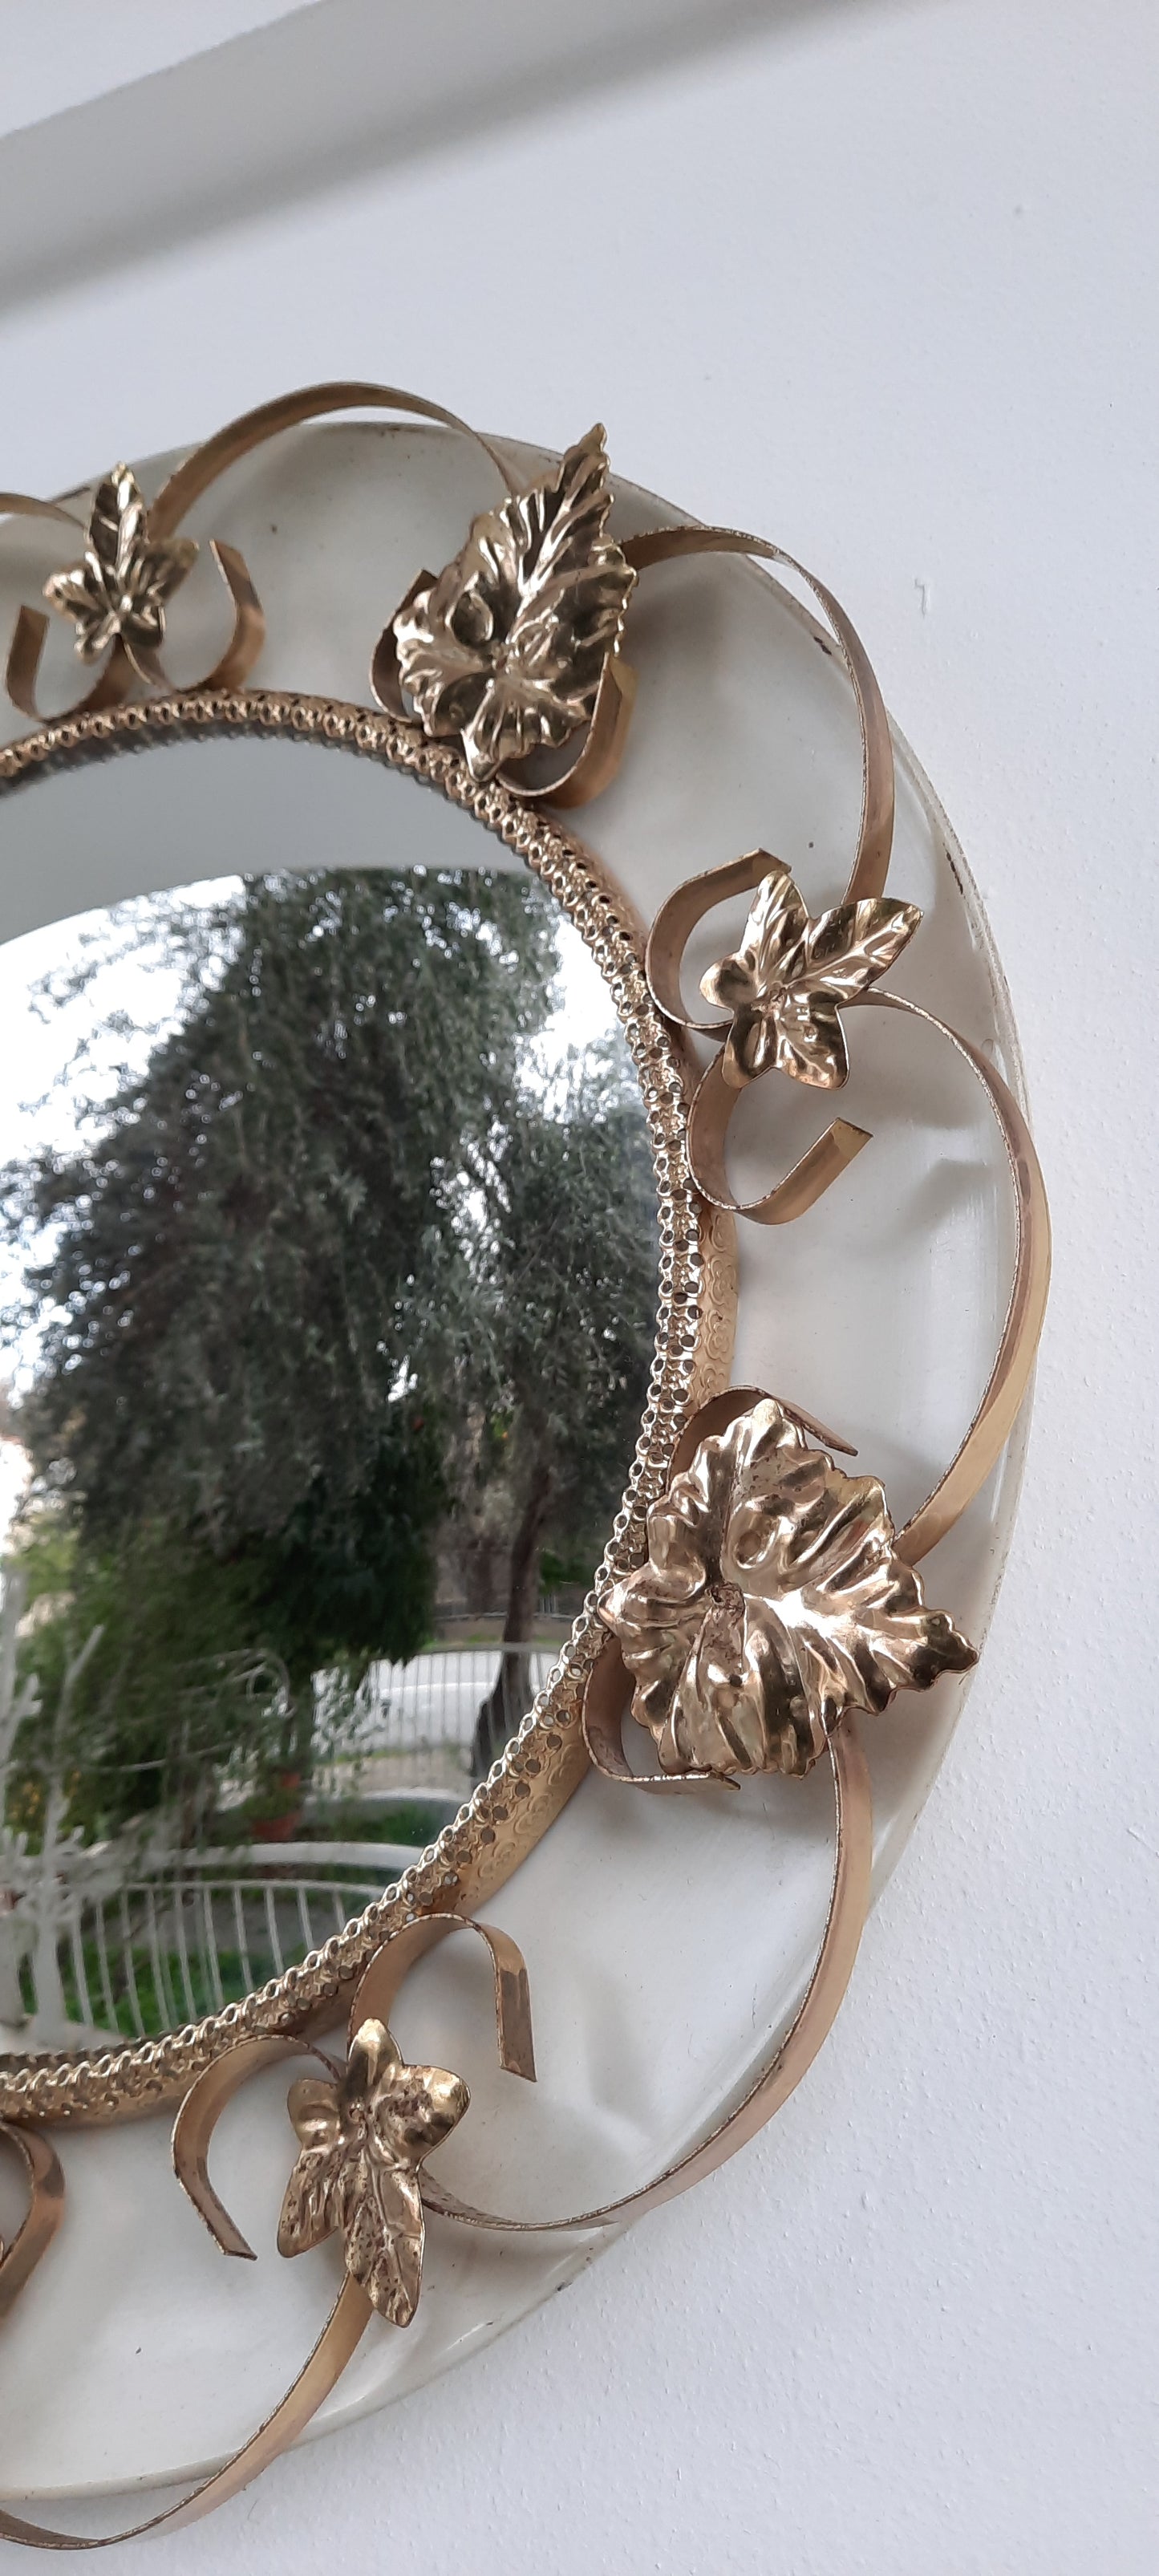 Mid-century Leaf Design Round Wall Mirror